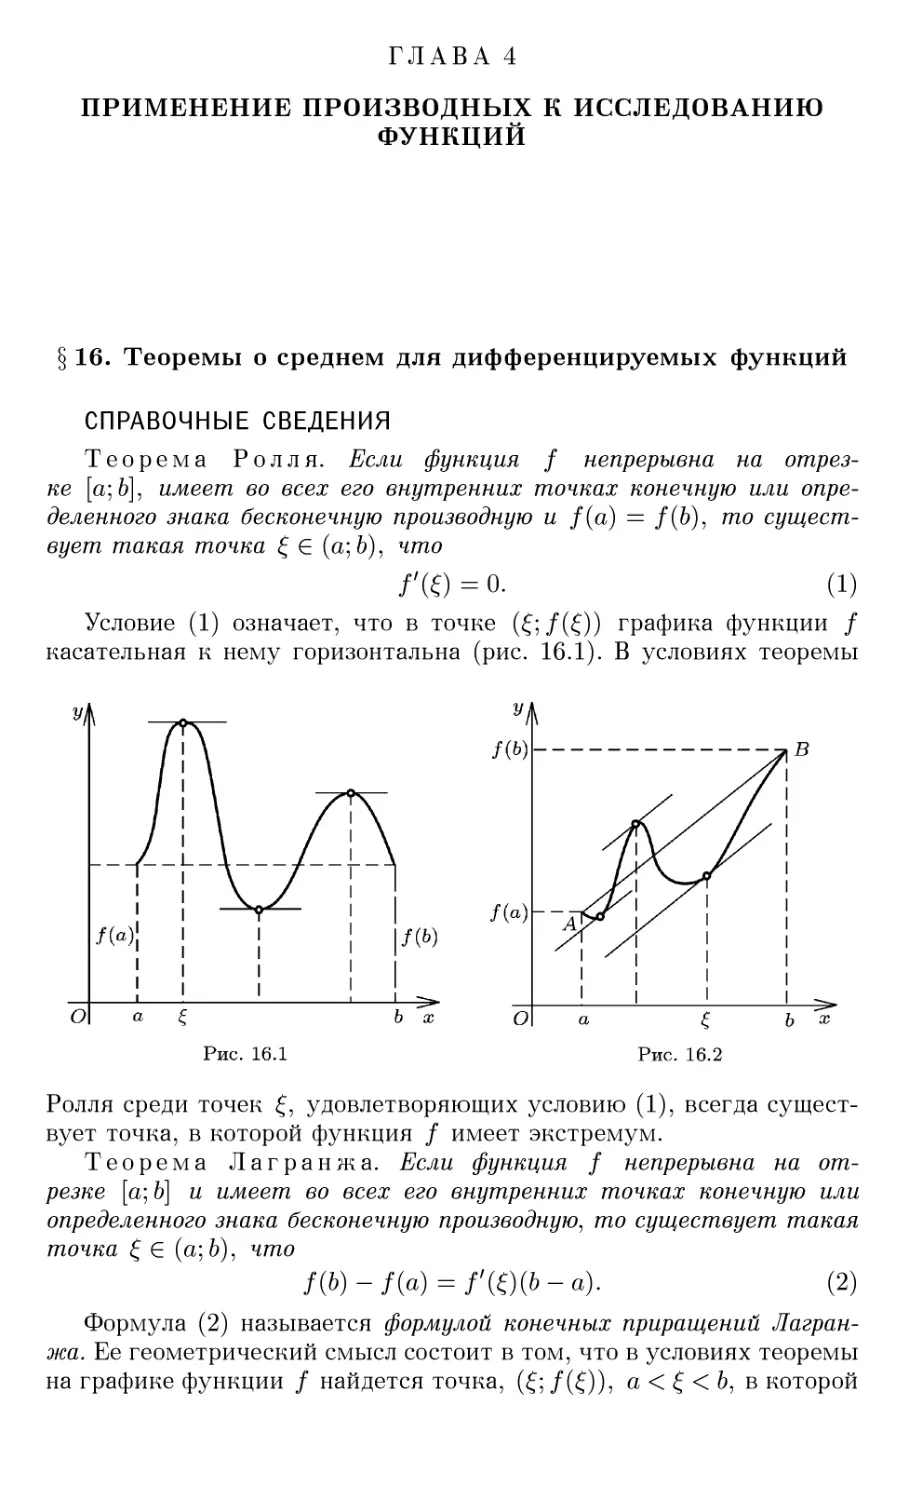 ГЛАВА 4 ПРИМЕНЕНИЕ ПРОИЗВОДНЫХ К ИССЛЕДОВАНИЮ ФУНКЦИЙ
§16. Теоремы о среднем для дифференцируемых функций